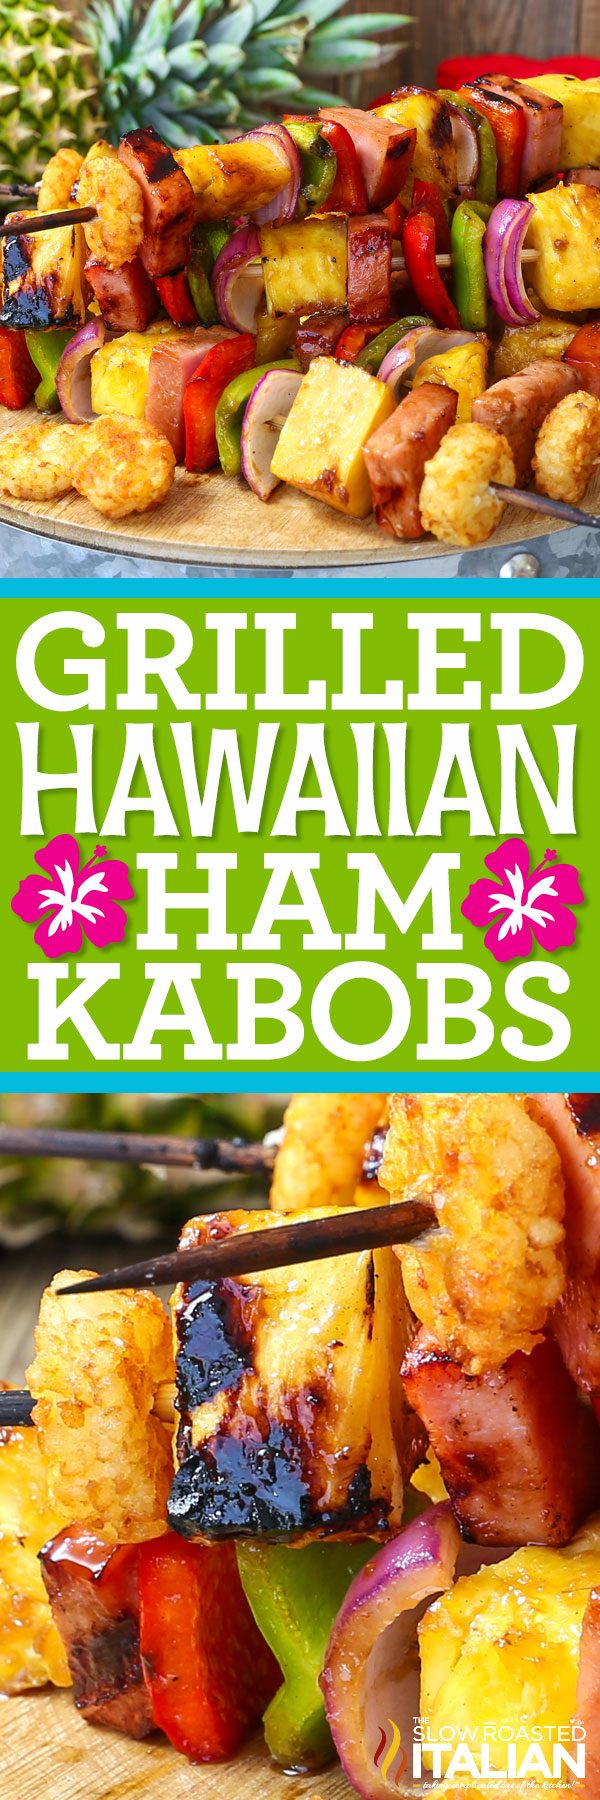 grilled-hawaiian-ham-kabobs-pin-5414503